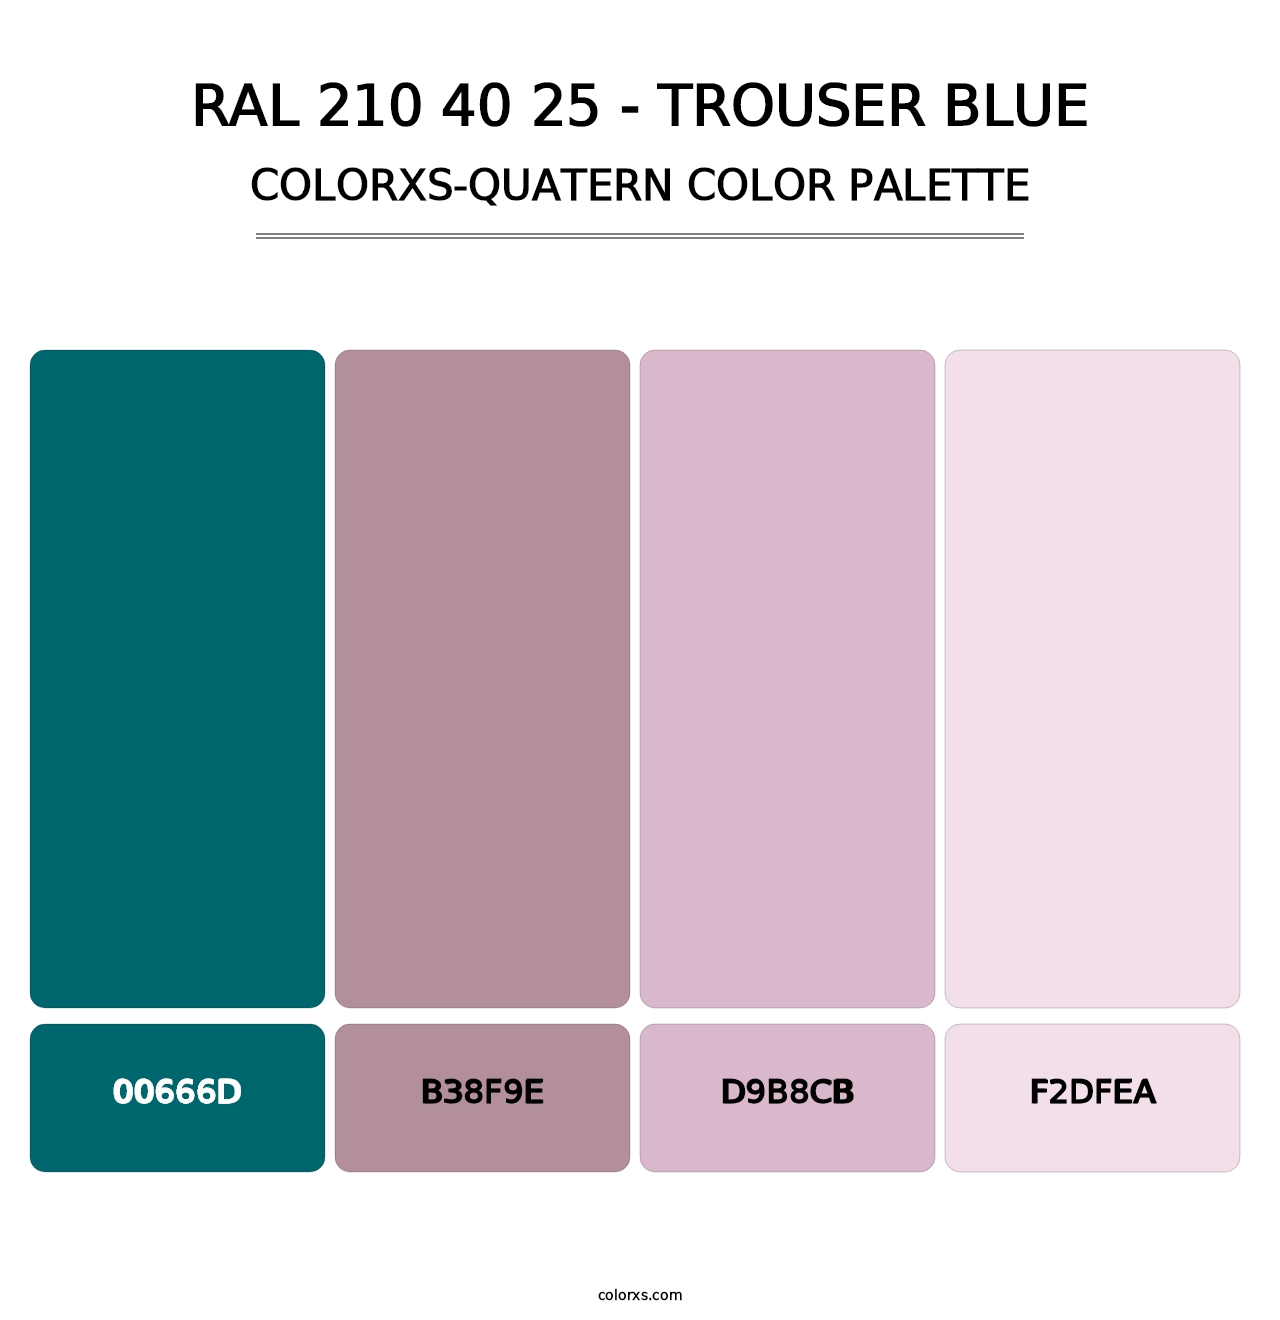 RAL 210 40 25 - Trouser Blue - Colorxs Quatern Palette